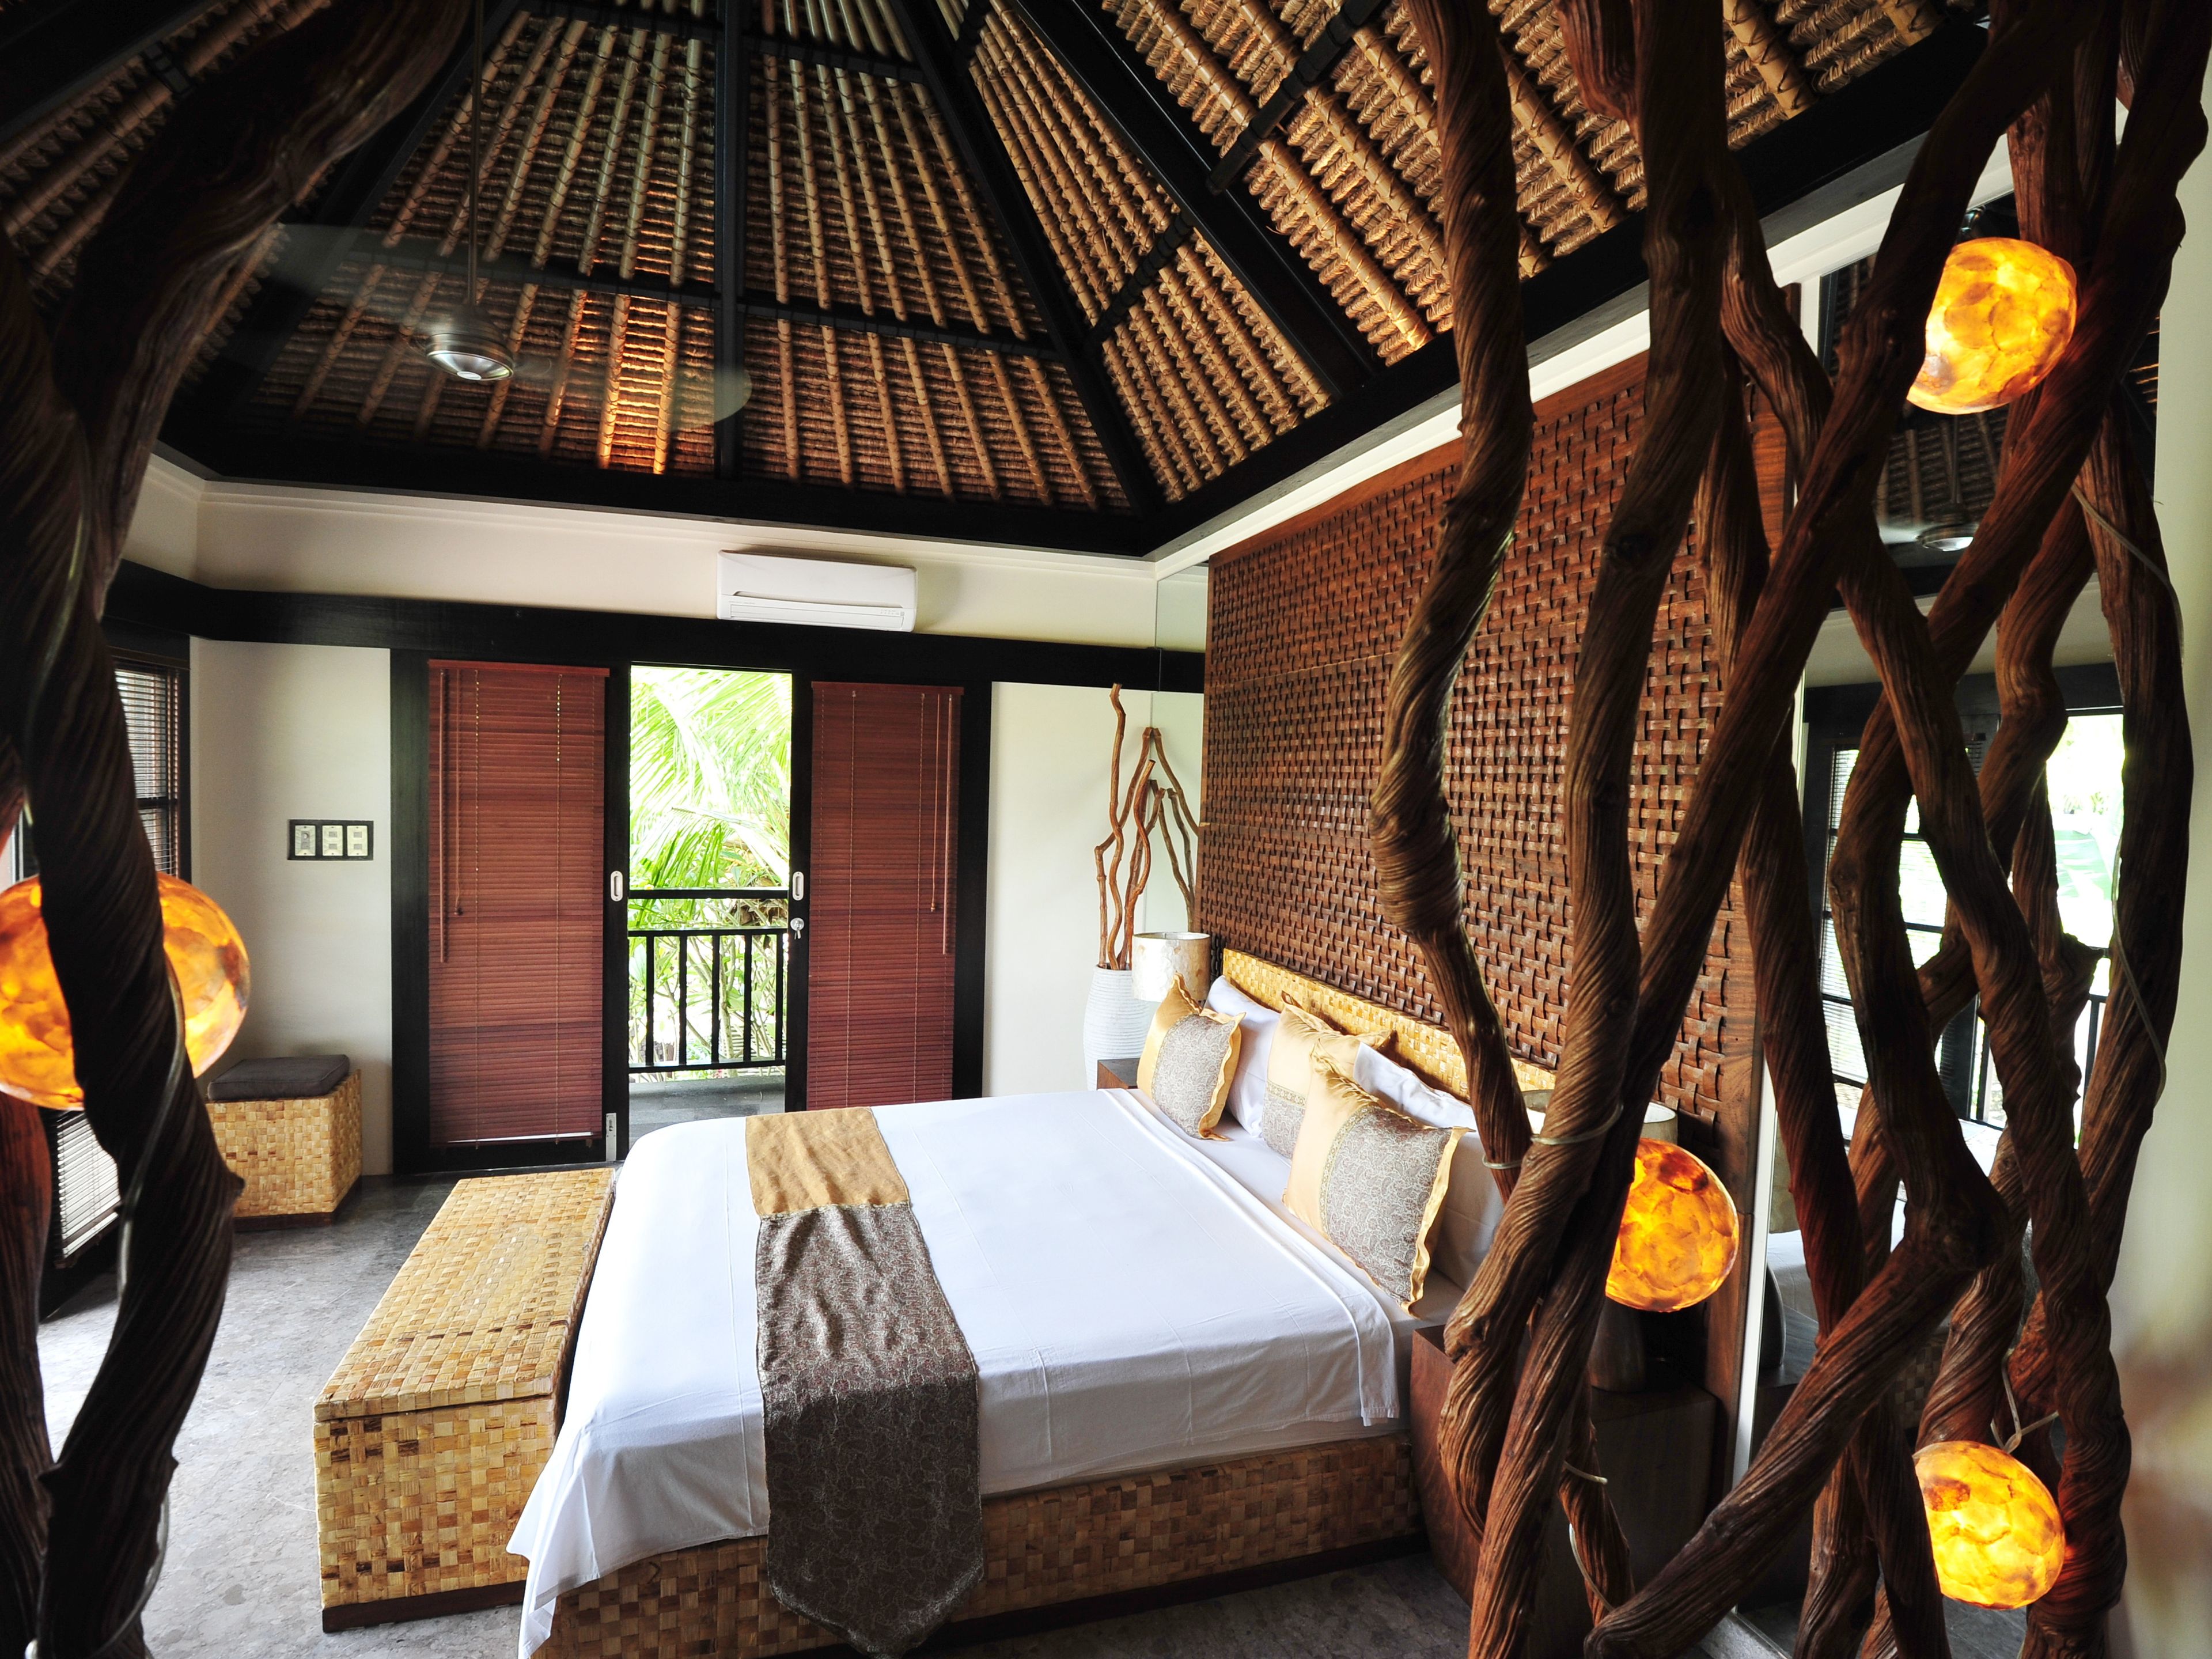 Zimmer im thailändischen Stil: Blick auf das Bett